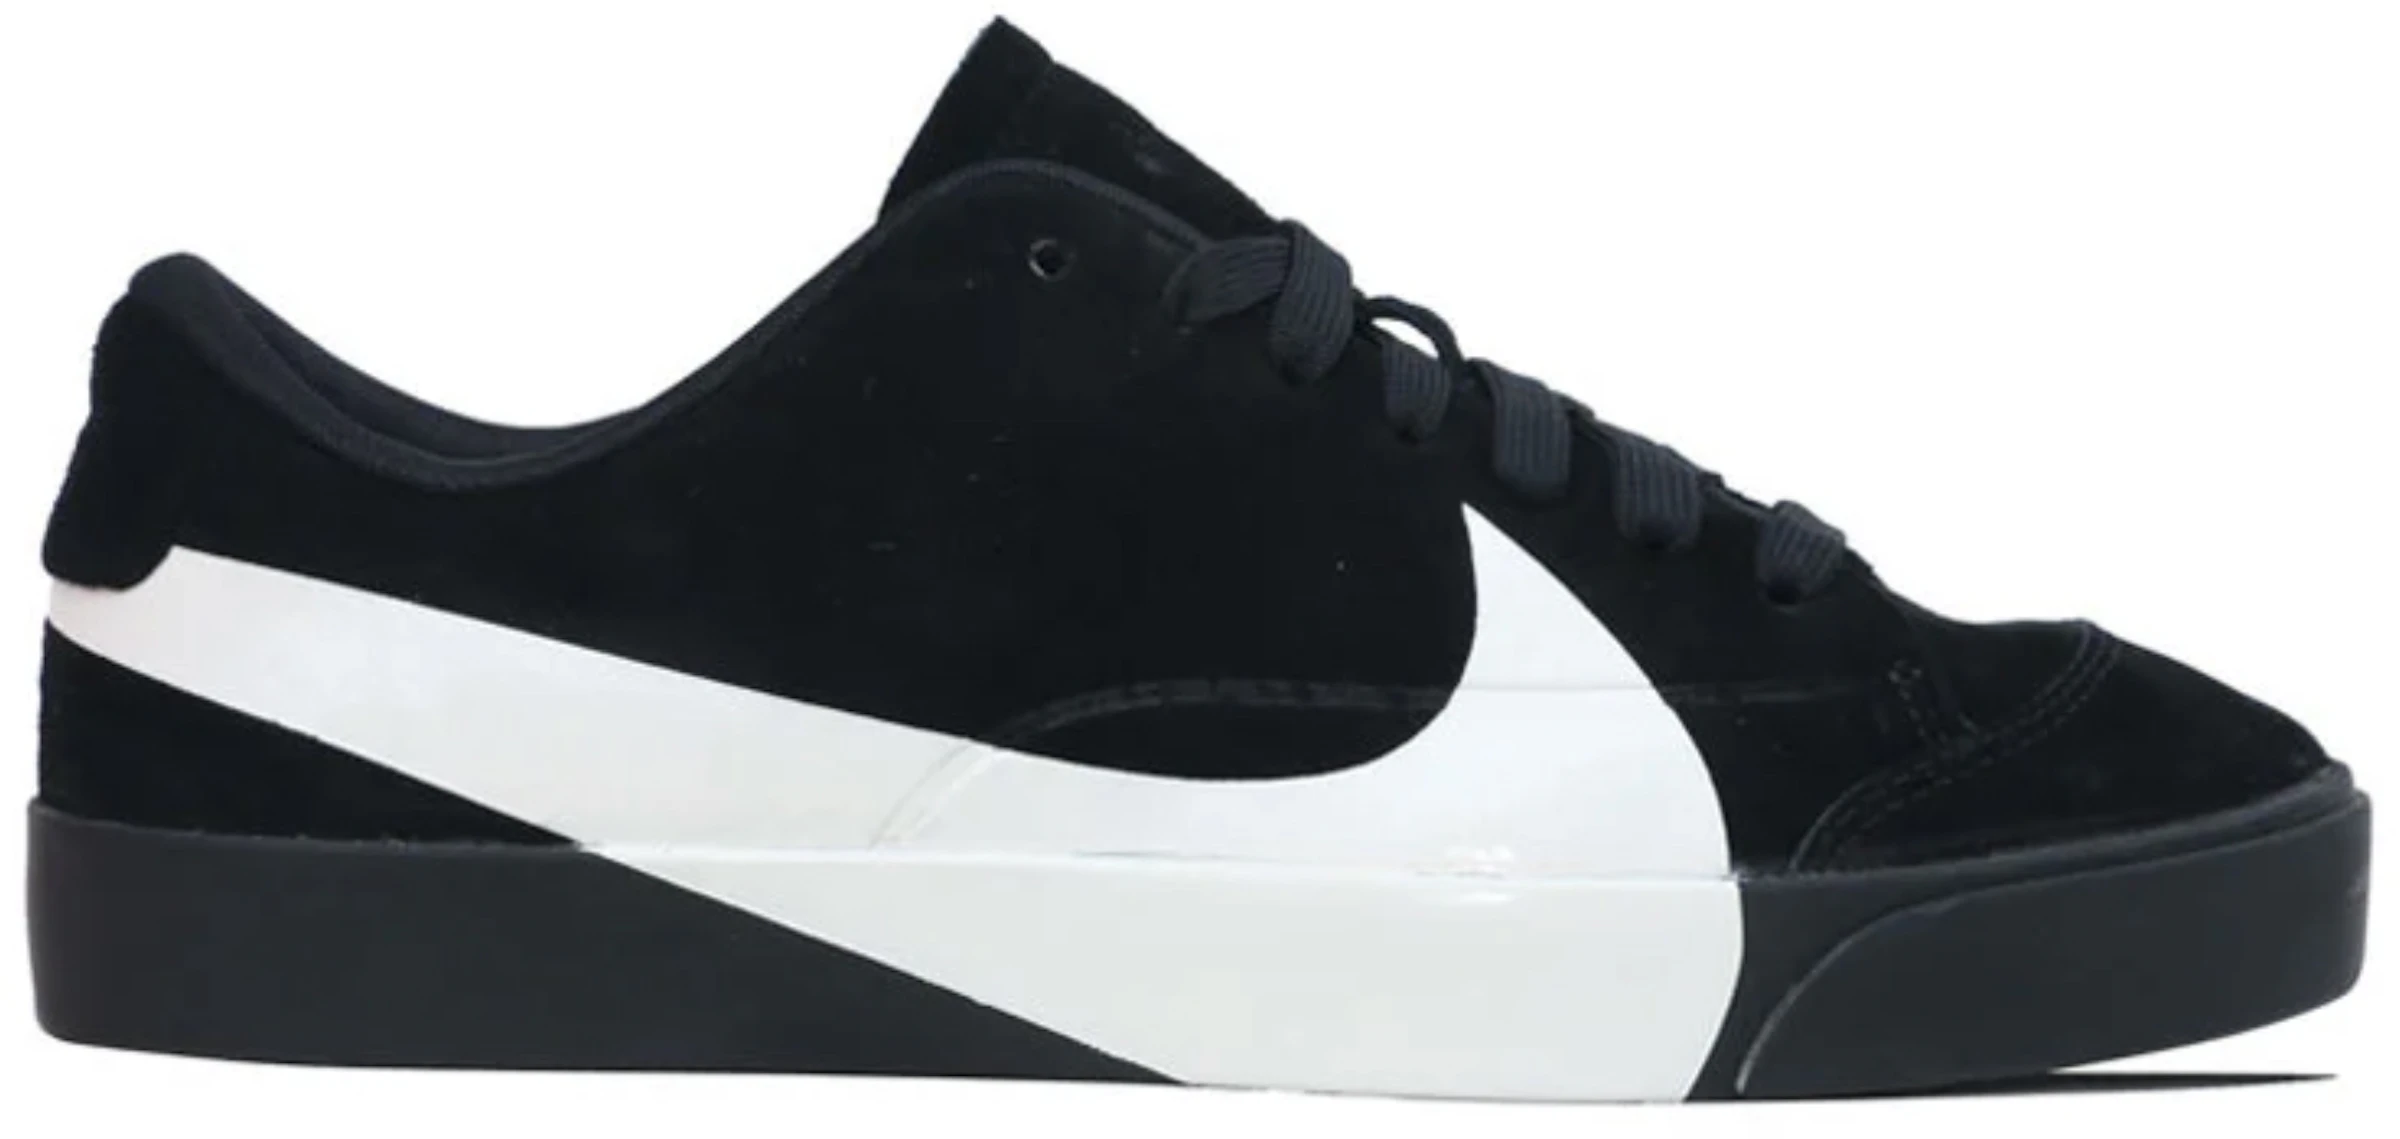 Nike City Low LX Black White - AV2253-001 -